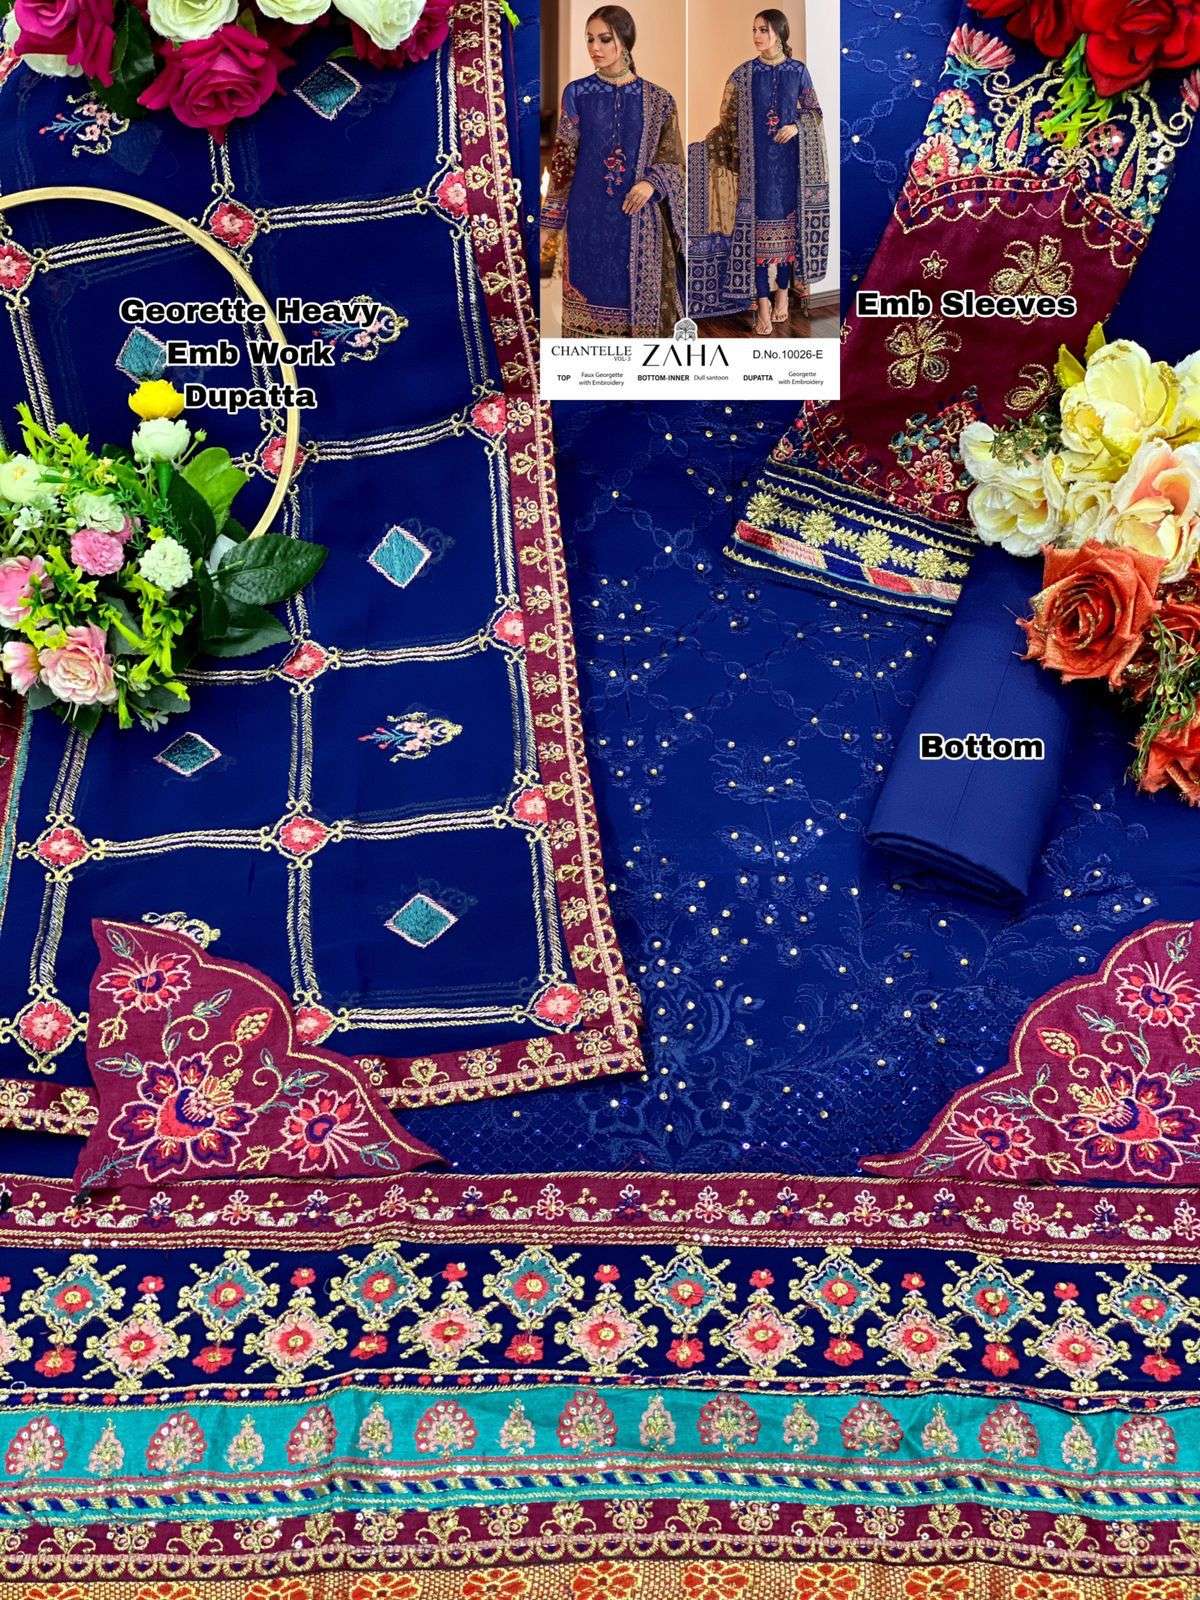 zaha chantelle vol-3 10026a-10026e series georgette designer party wear pakisatni salwar suits wholesaler surat